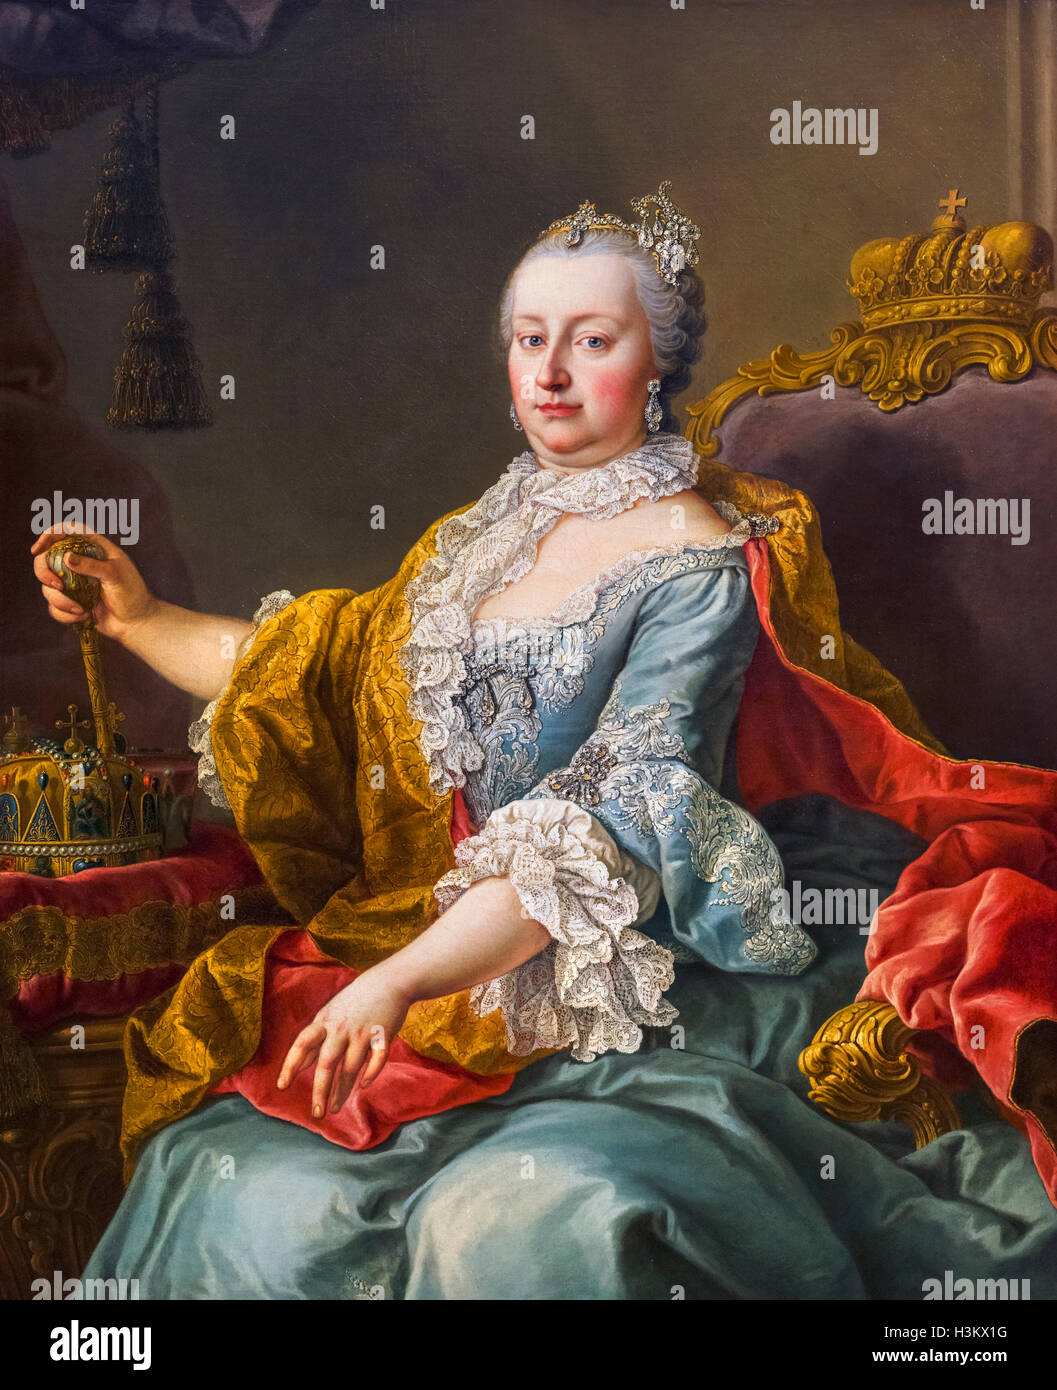 L'Impératrice Marie-Thérèse (Maria Theresa Walburga Amalia Christina - 1717-1780) par Martin van Meytens, huile sur toile, 1759. Banque D'Images